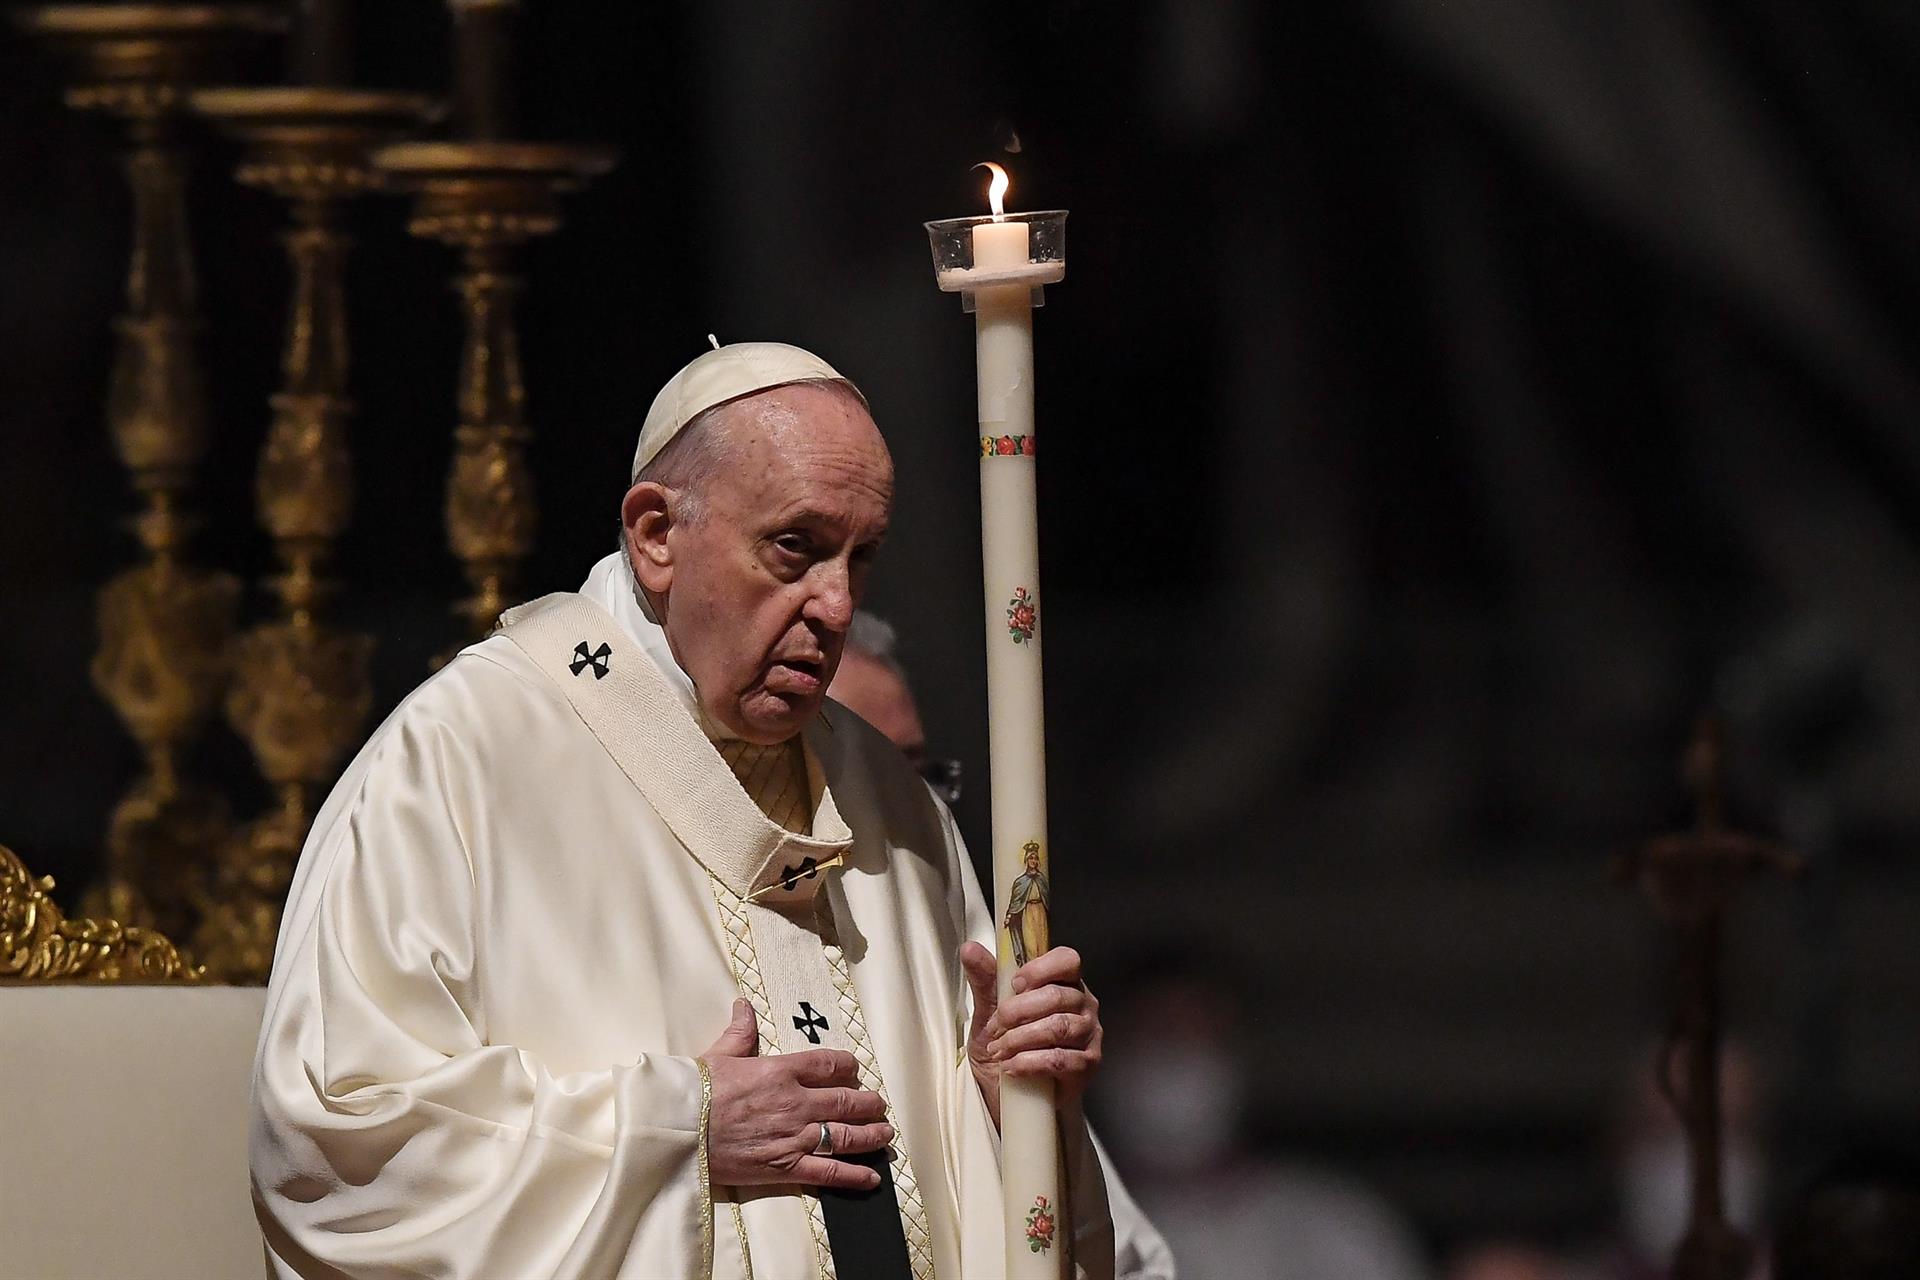 El papa Francisco asegura que “gastar en armas ensucia el alma, el corazón y la humanidad”